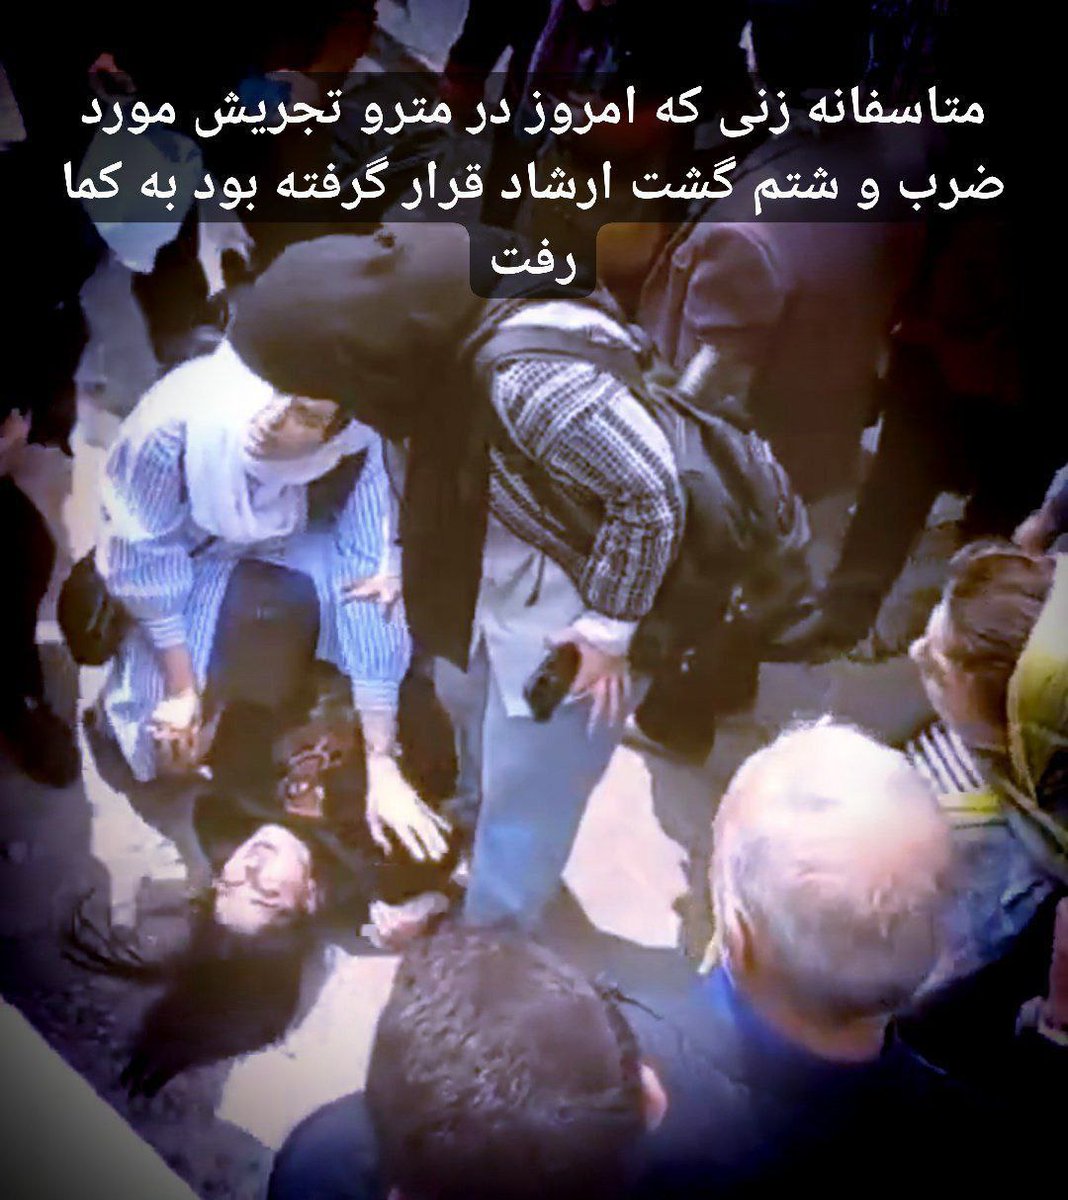 حکومت اشغالگر و ویرانگر و ظالم است. علیه این ظالمان بپاخیزیم. #گشت_ارشاد #IRGCterorrists